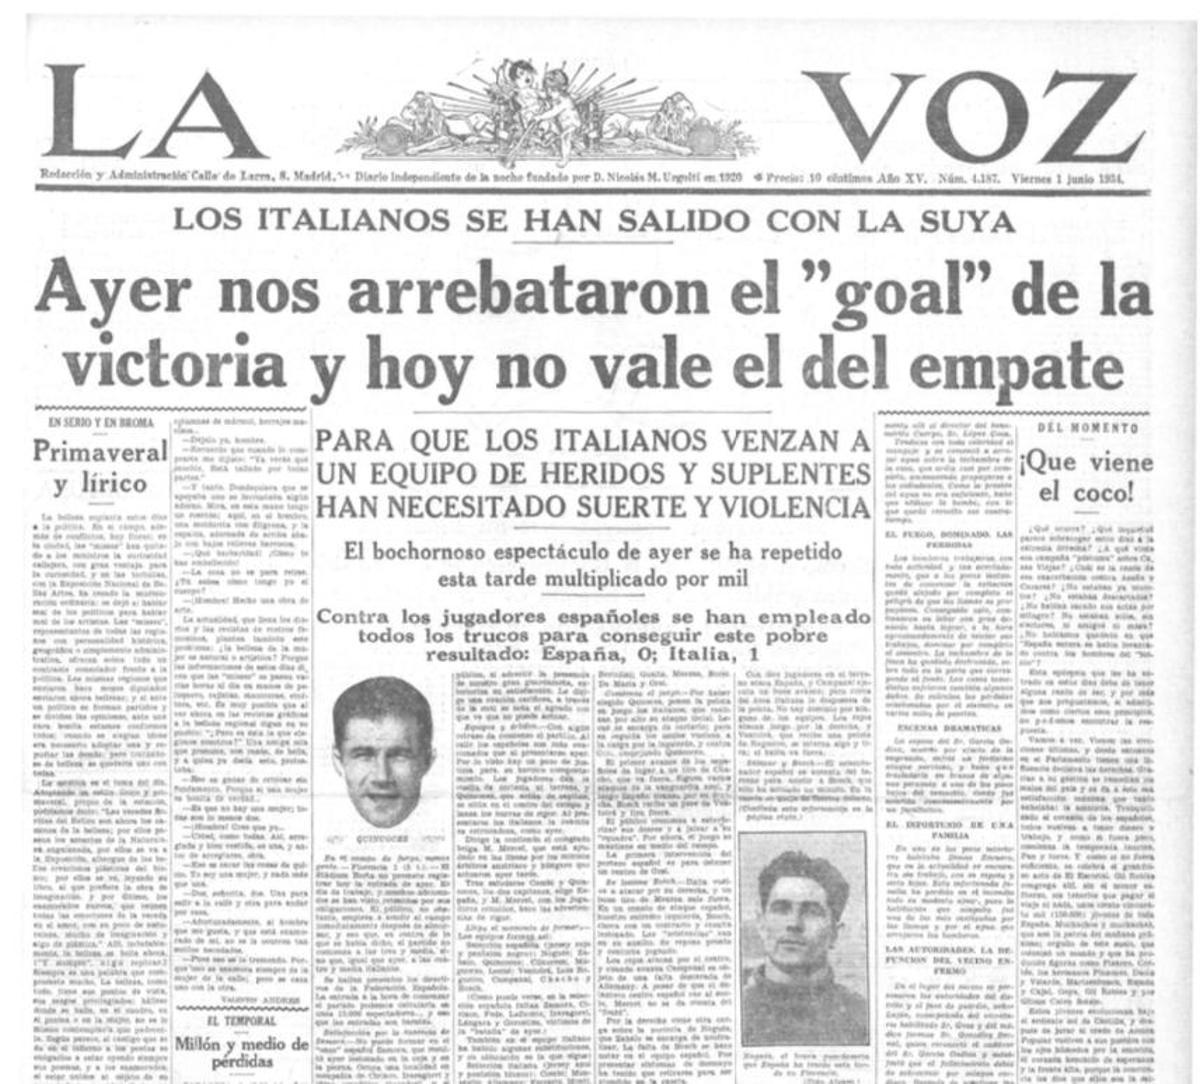 Imagen de 'La Voz' sobre el Mundial de 1934